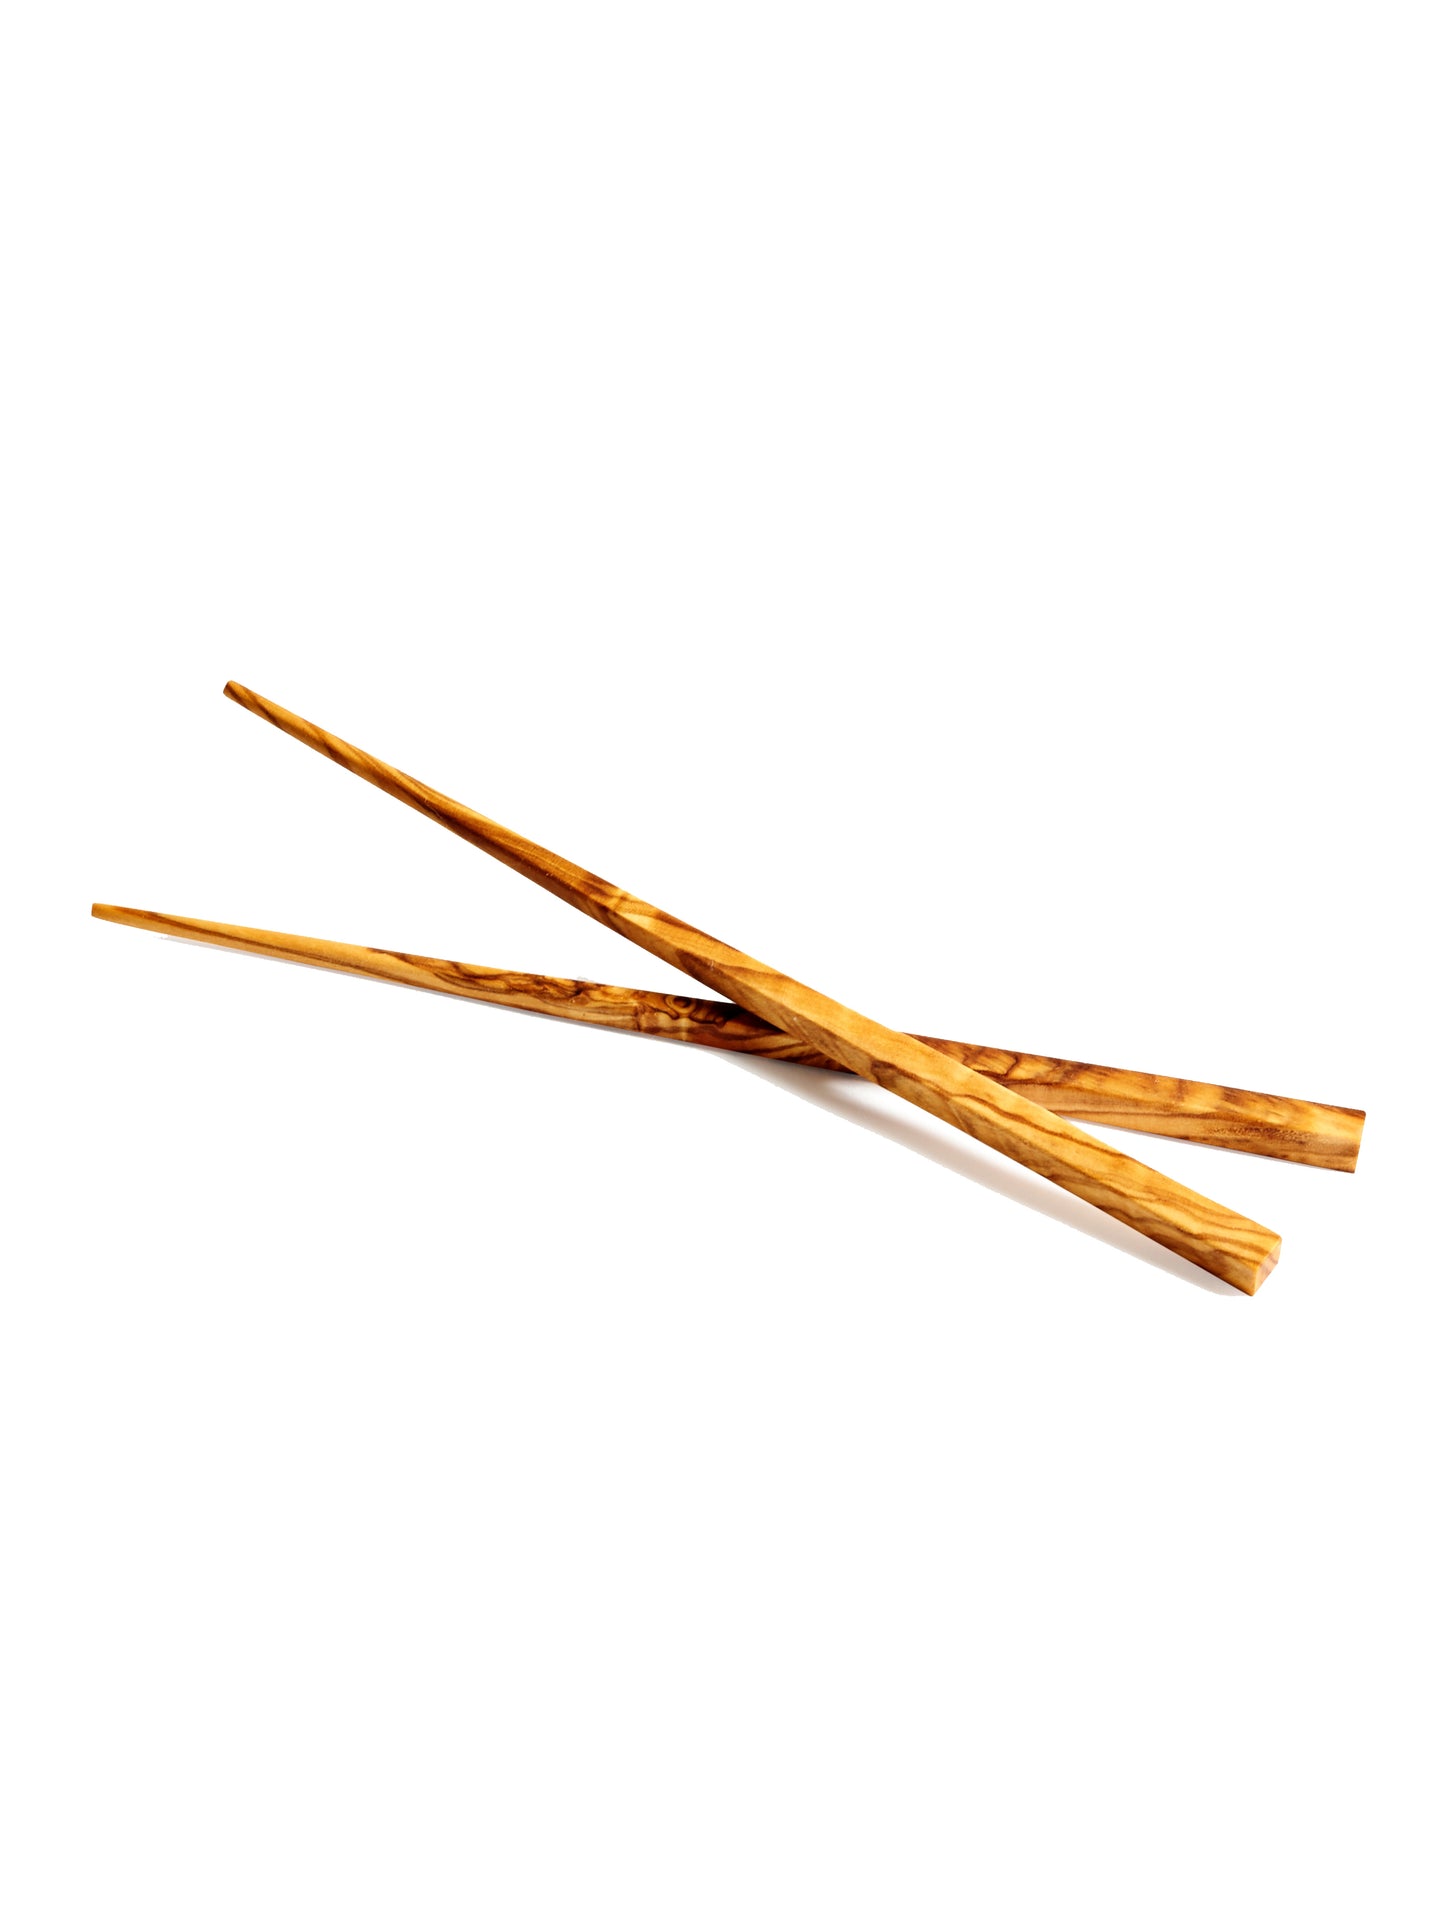 WT Olive Wood Chop Sticks Weston Table